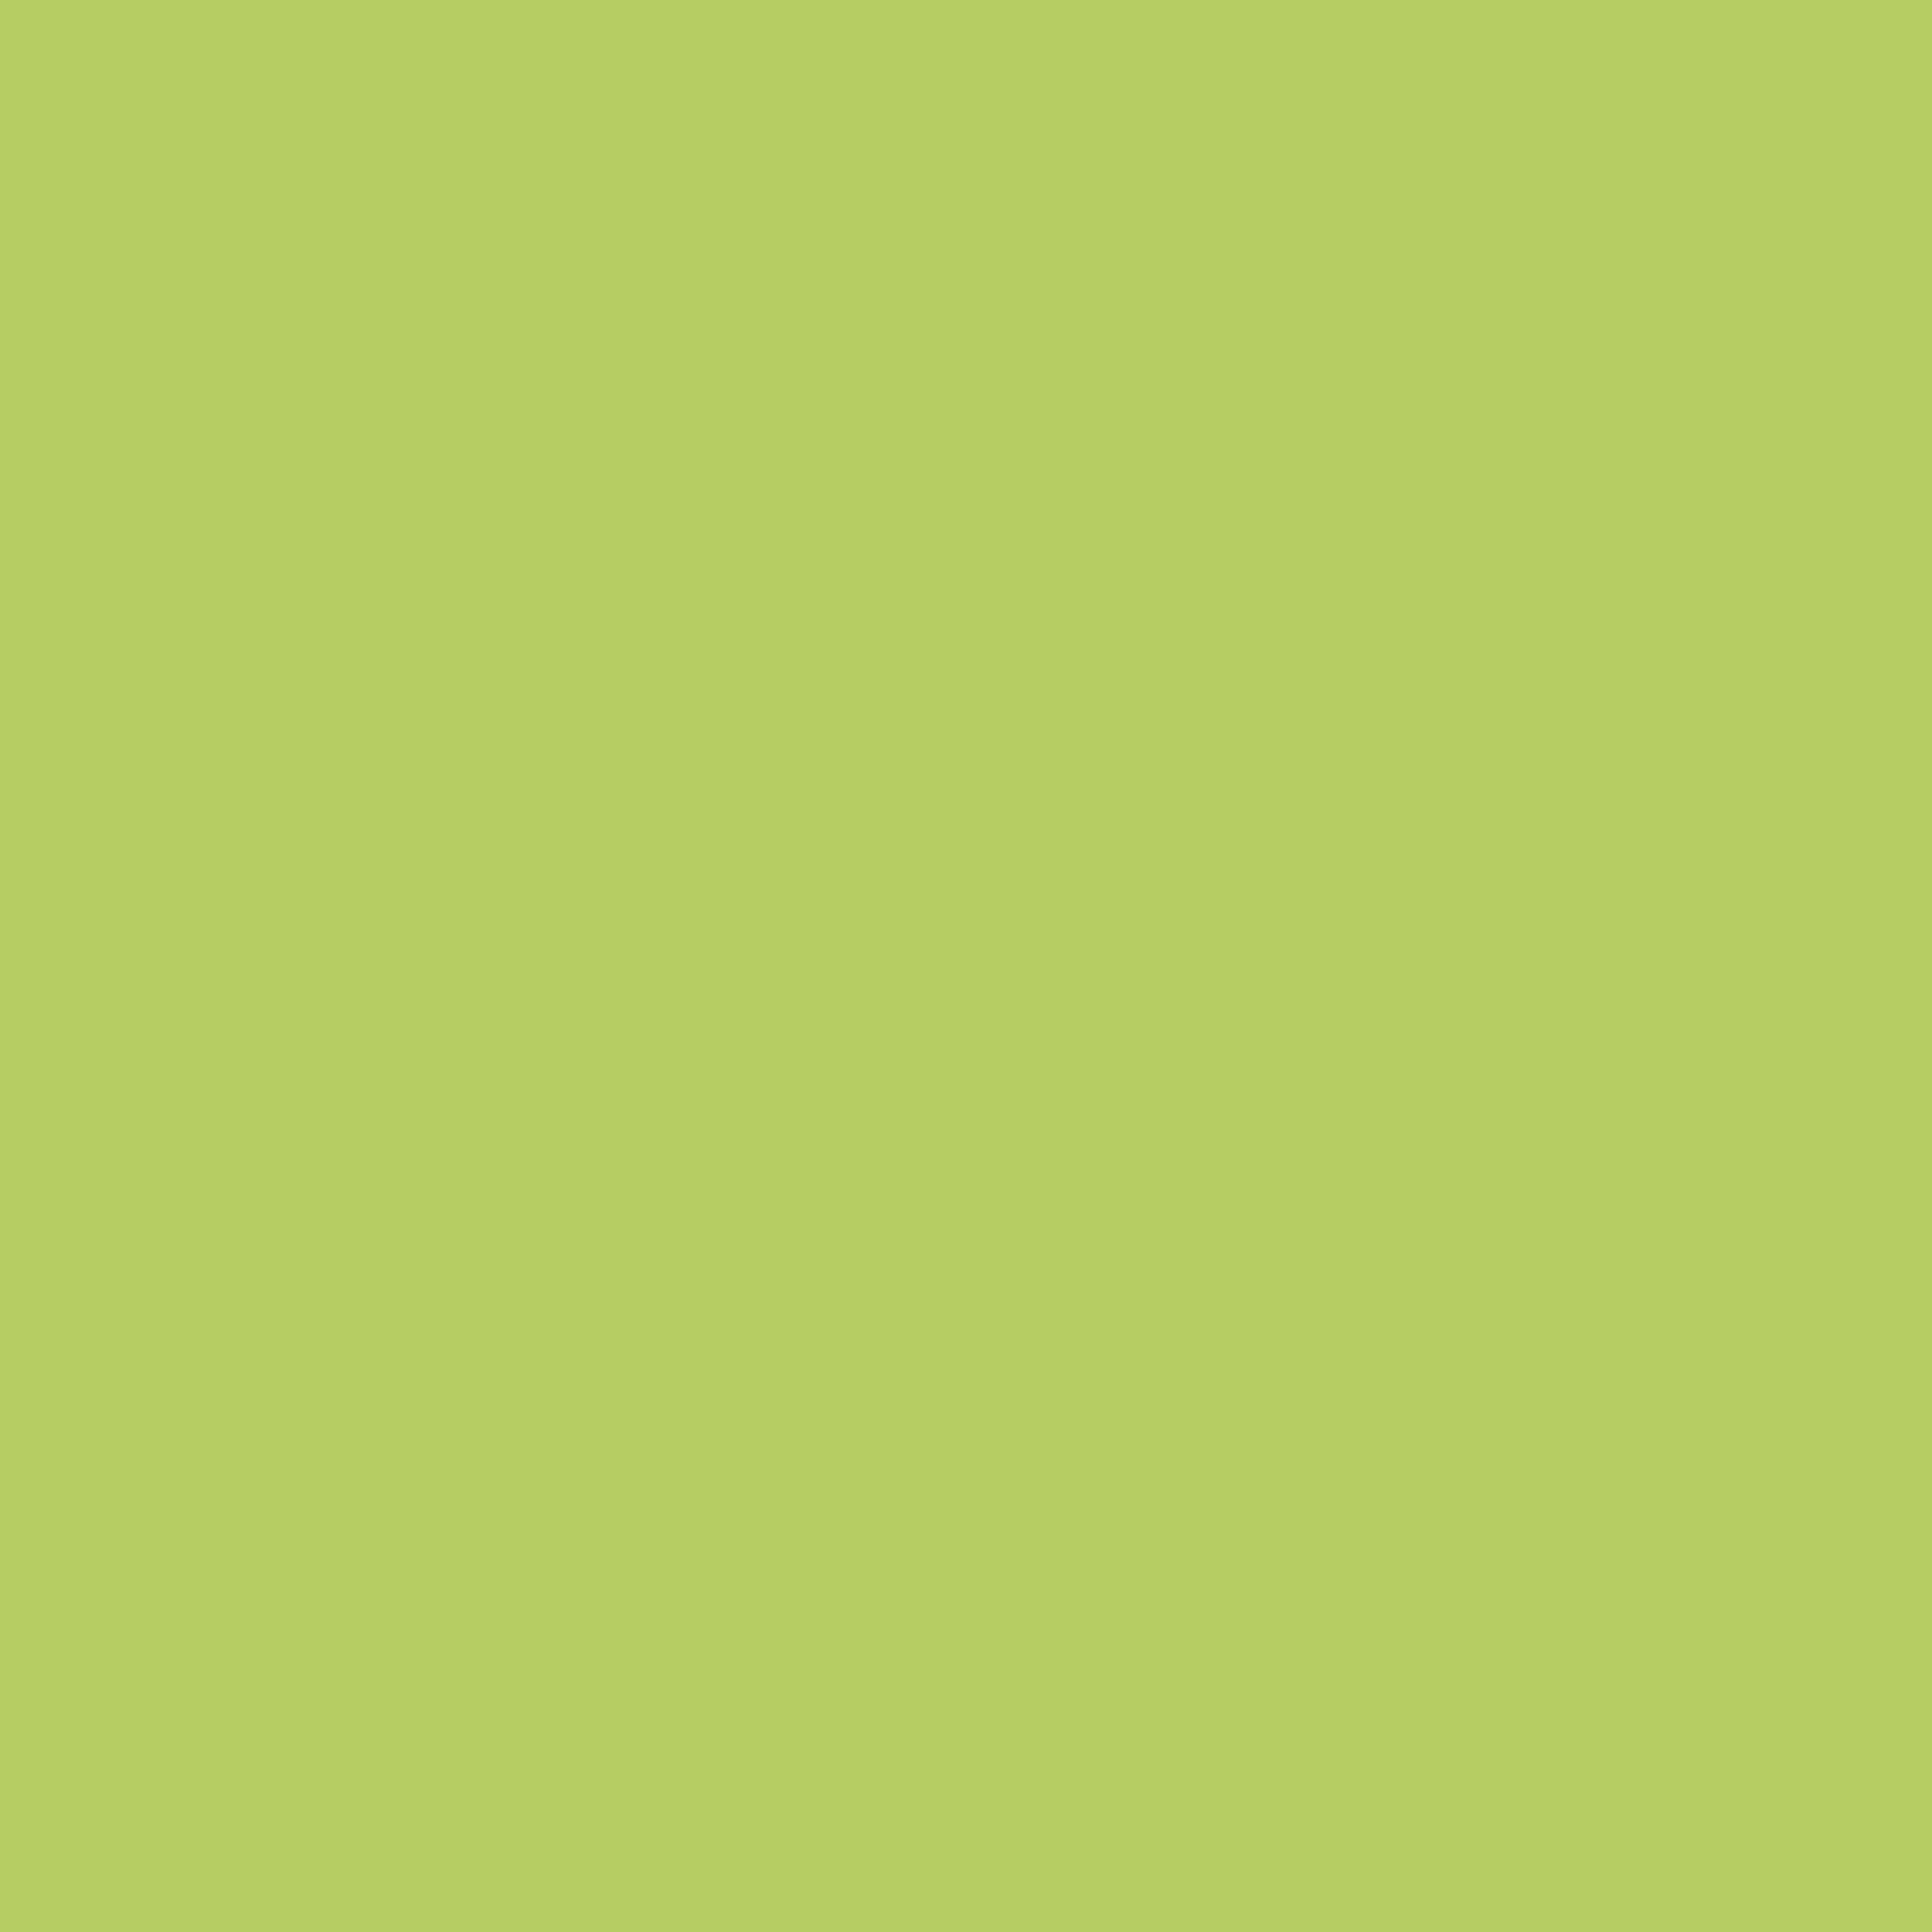 Premium-Buntlack hellgrün glänzend 250 ml + product picture